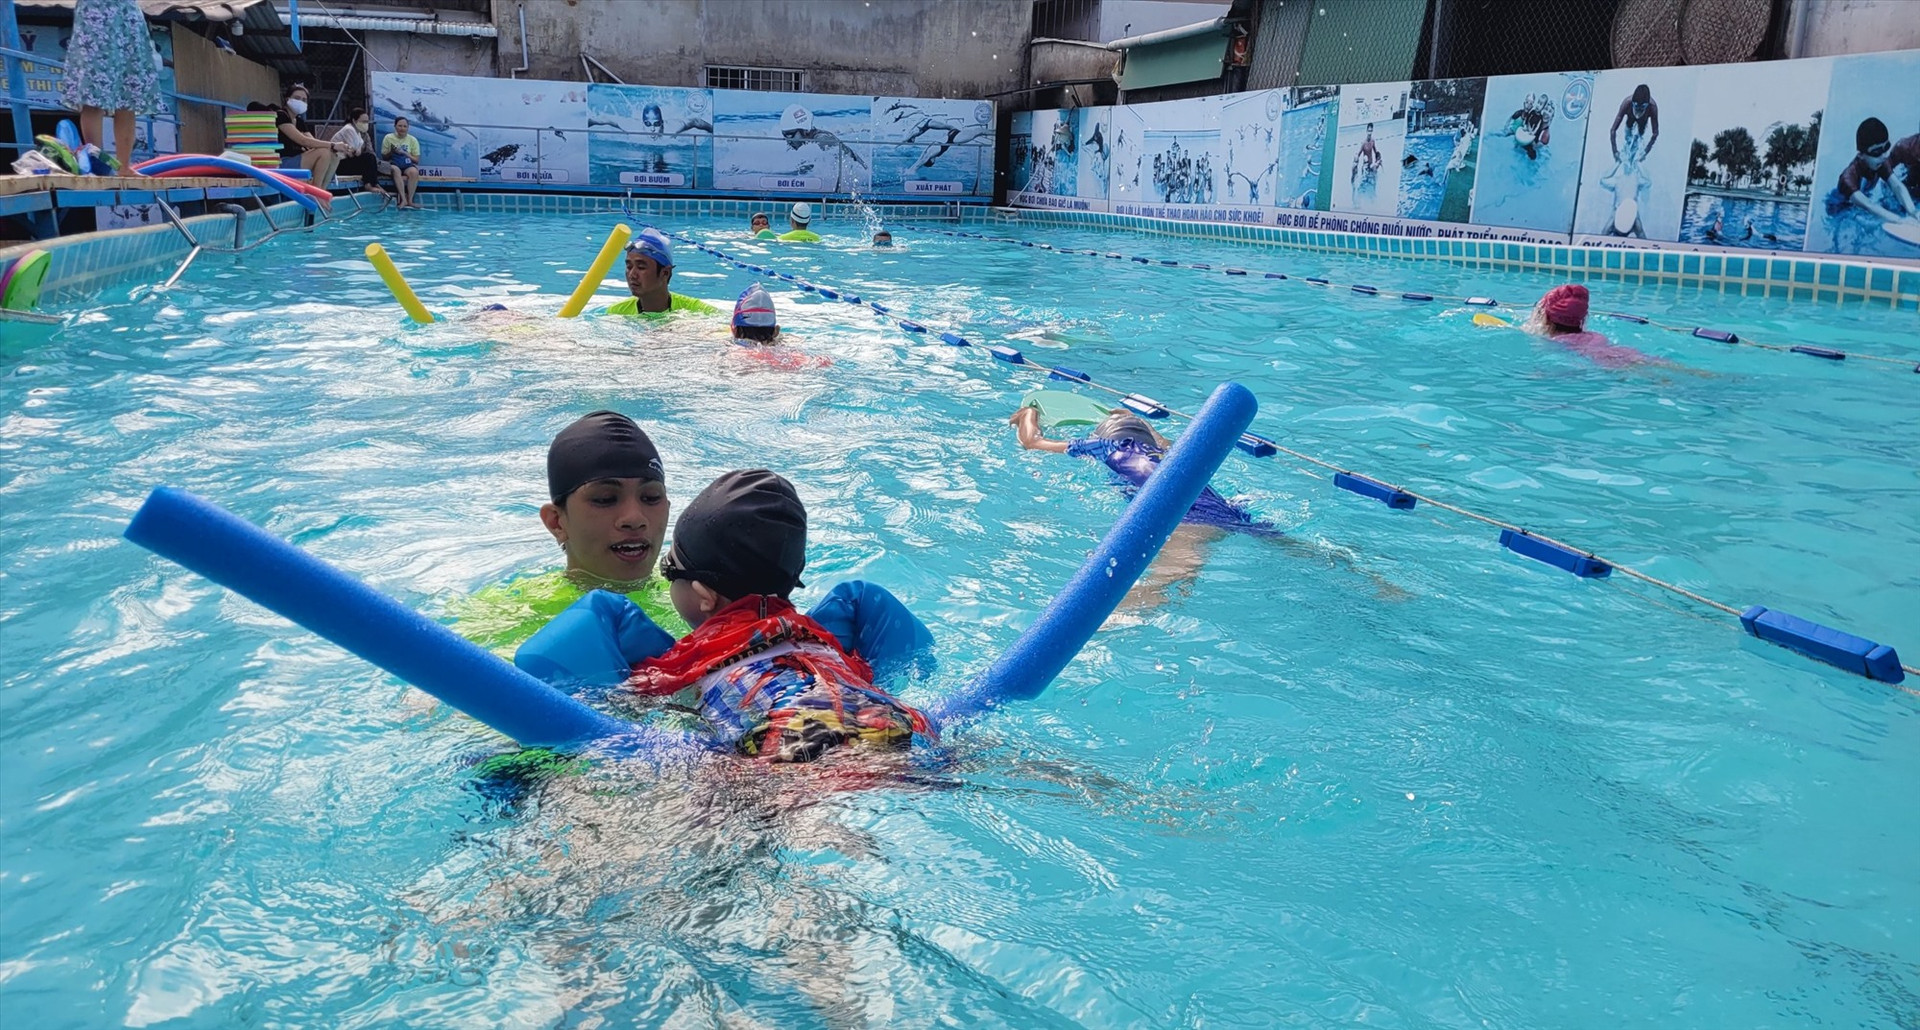 Trẻ em cần được học bơi và các kỹ năng an toàn trong môi trường nước. Ảnh: A.B